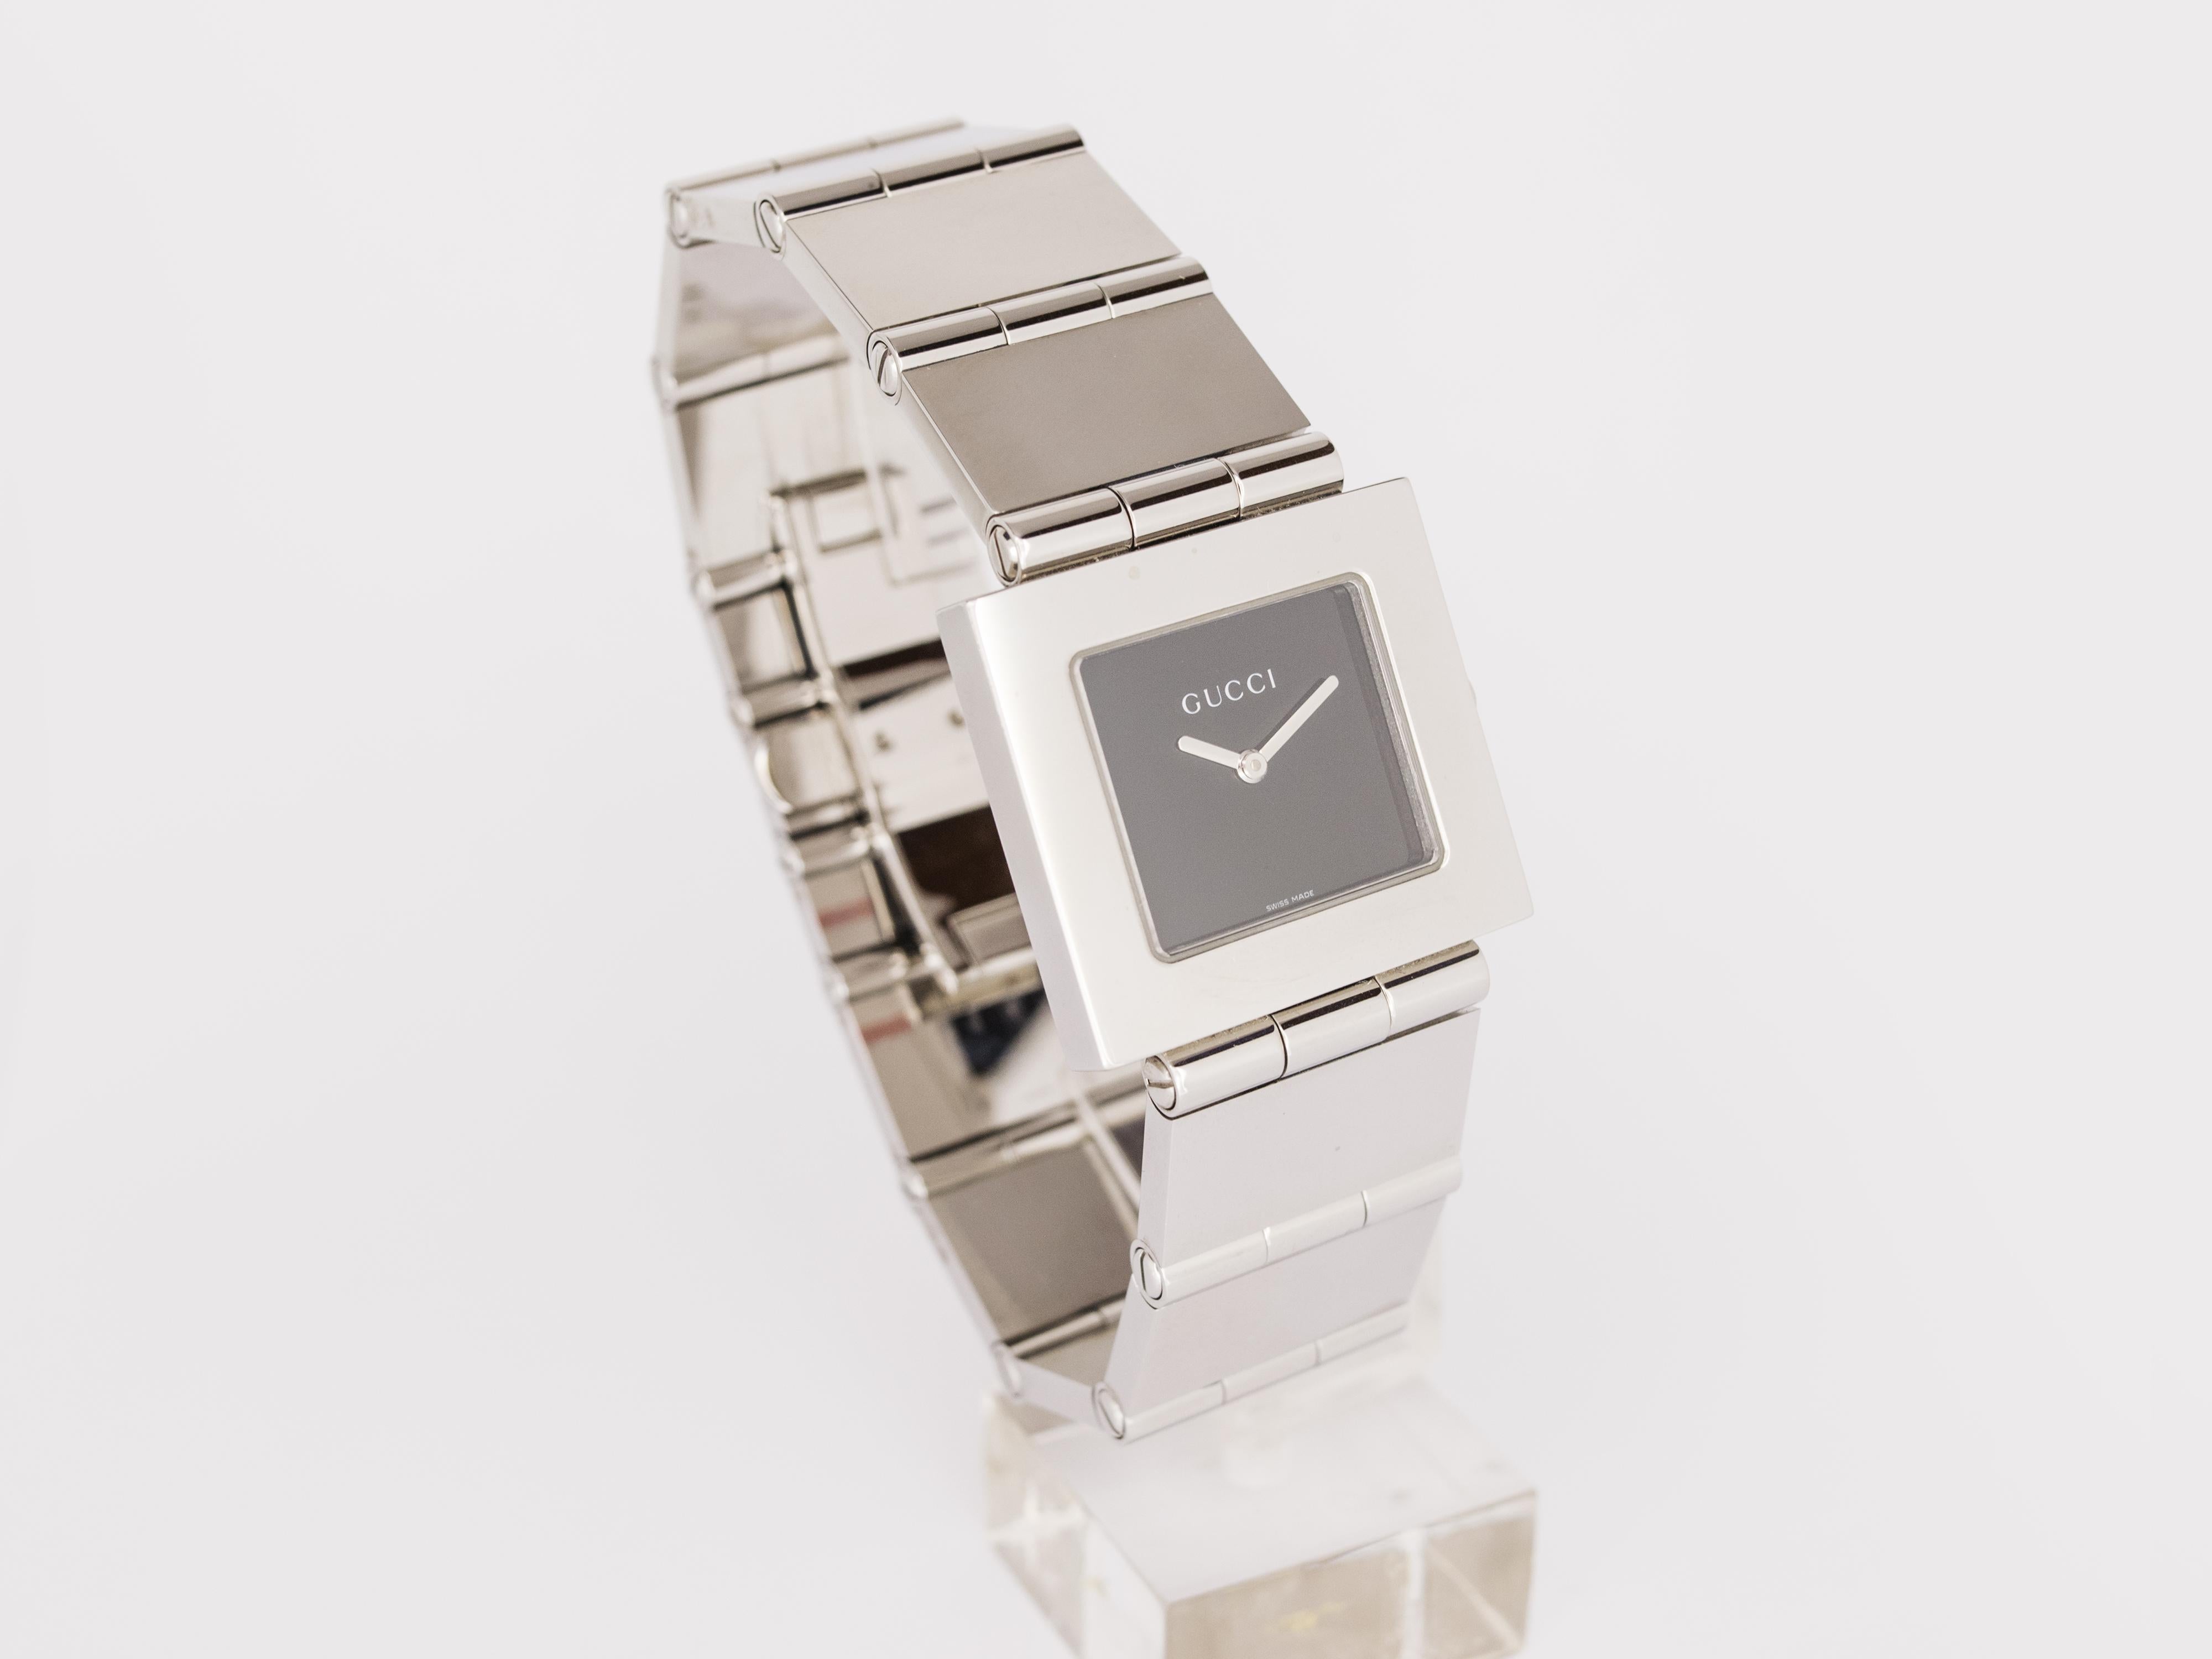 NEW Gucci stainless steel quartz watch Swiss Made.
La montre n'a jamais été portée et provient d'un revendeur agréé italien avec boîte et garantie internationale.

Elle est équipée d'un cadran carré noir brillant sans index.

Le bracelet en acier